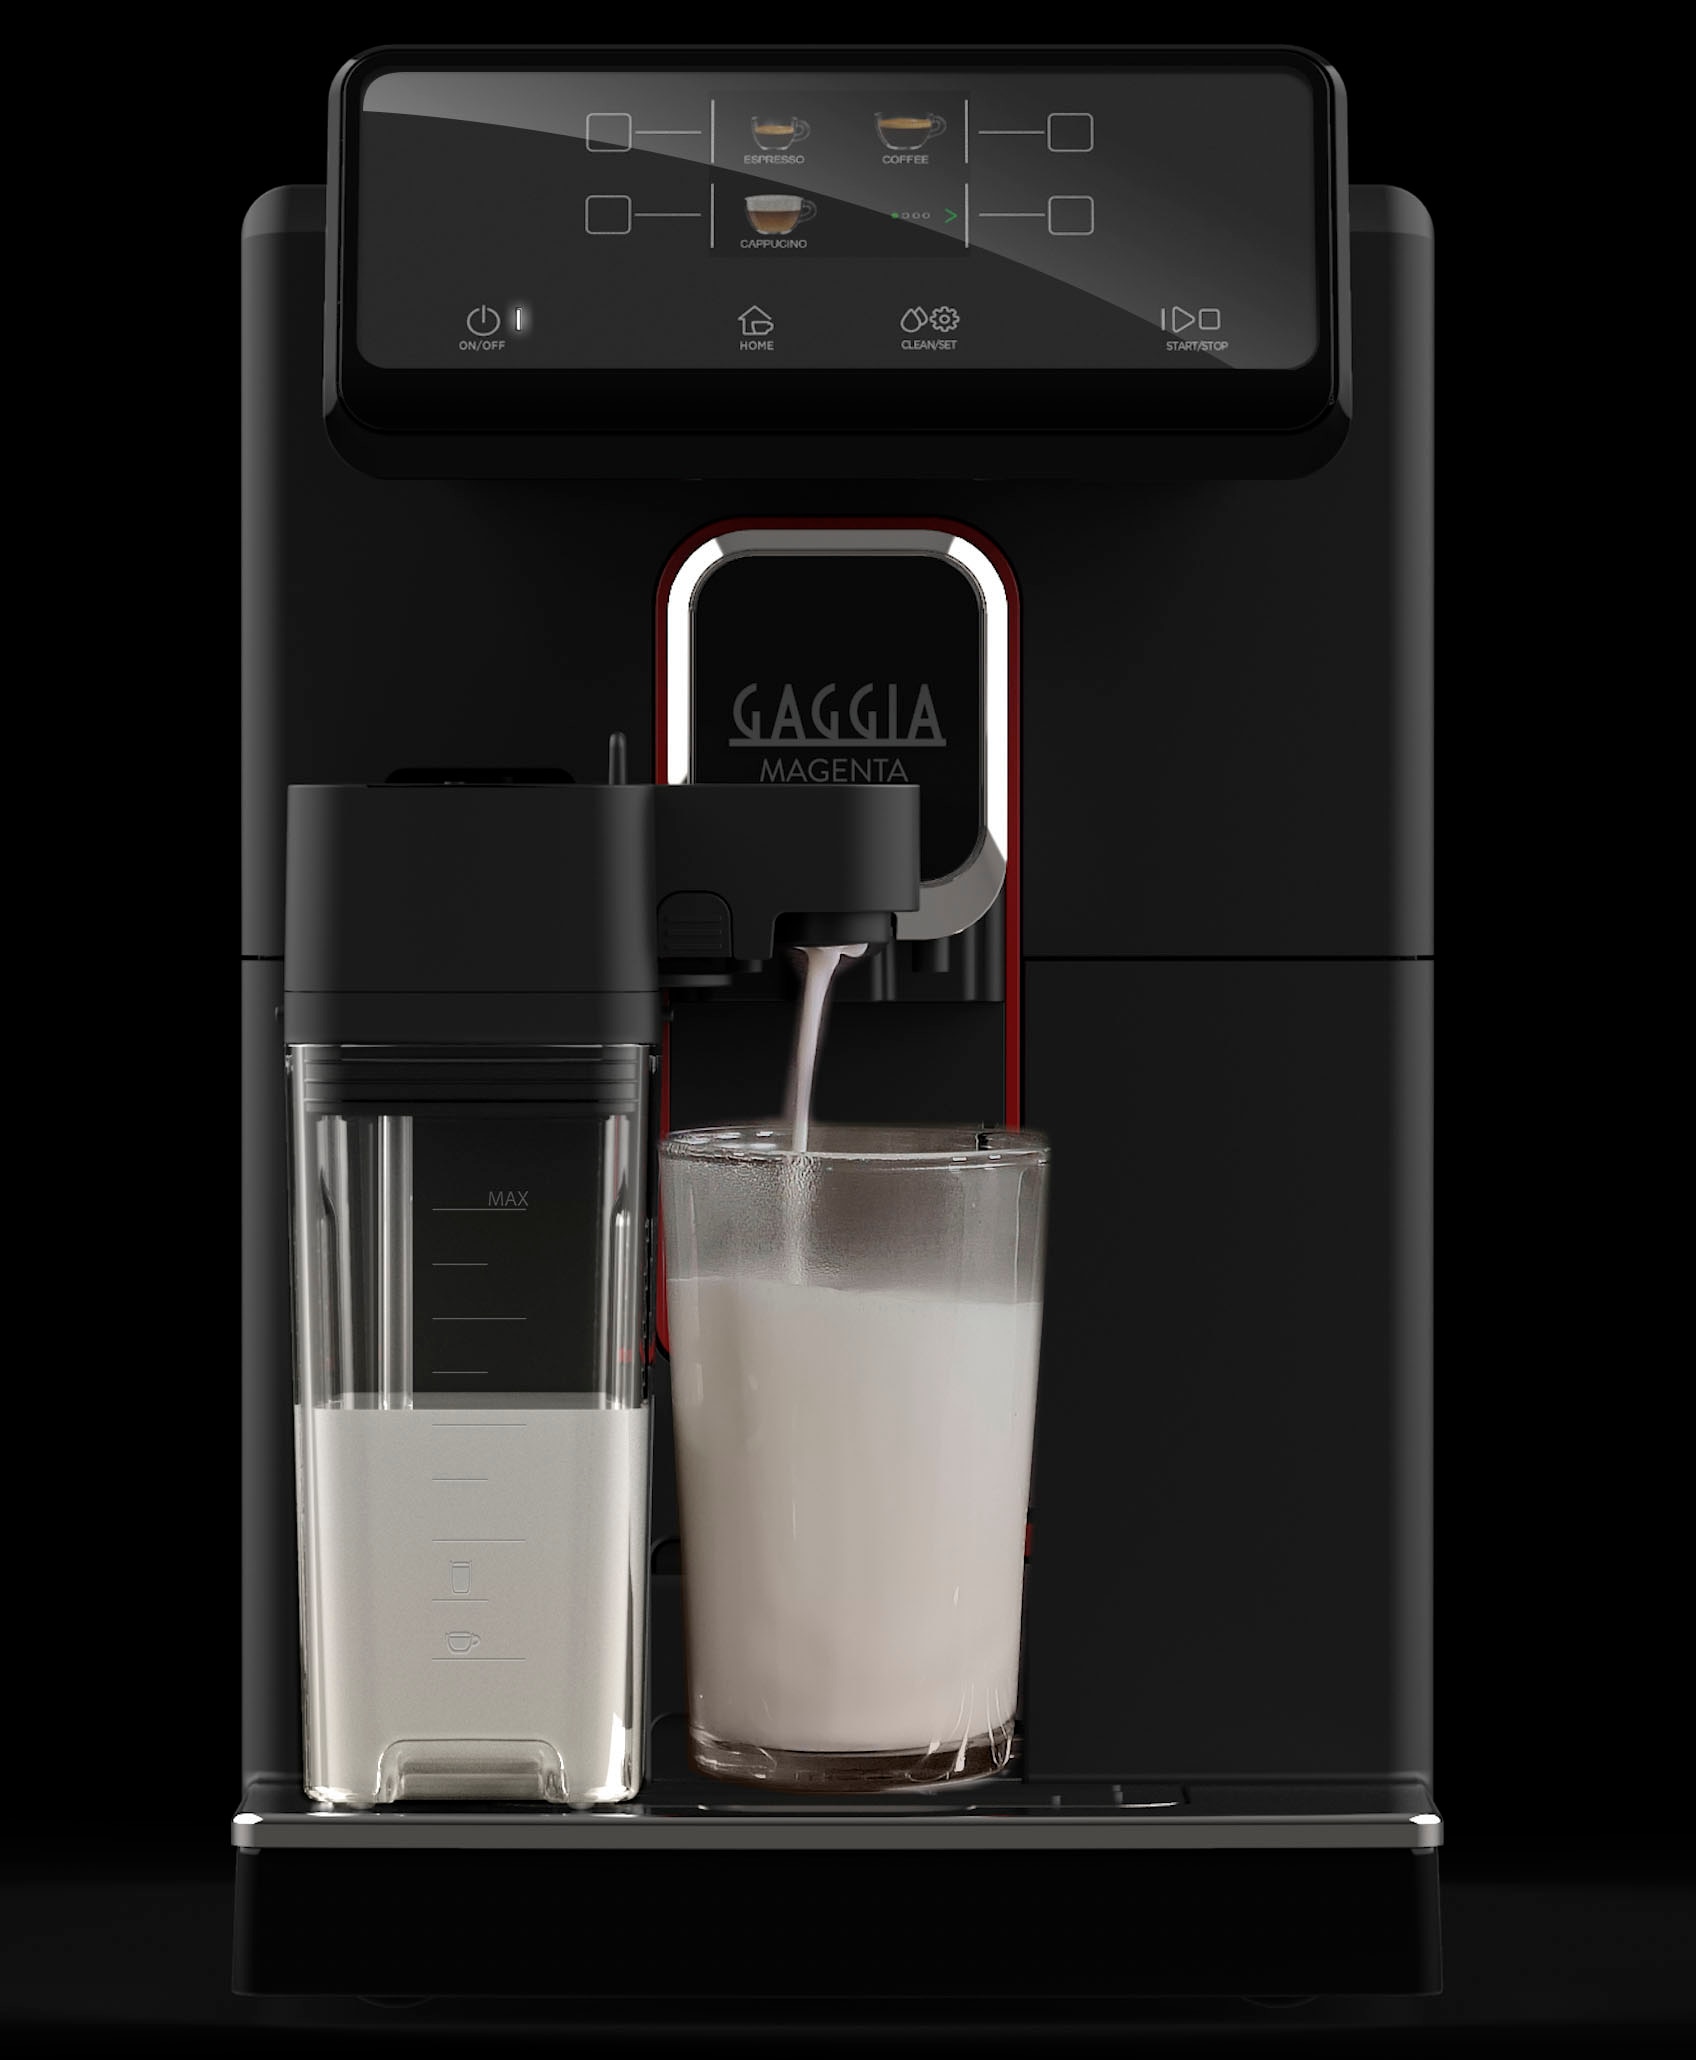 Gaggia Kaffeevollautomat »Magenta Prestige«, vom Erfinder des Espresso - Barista@Home, One-Touch-Cappuccino & mehr